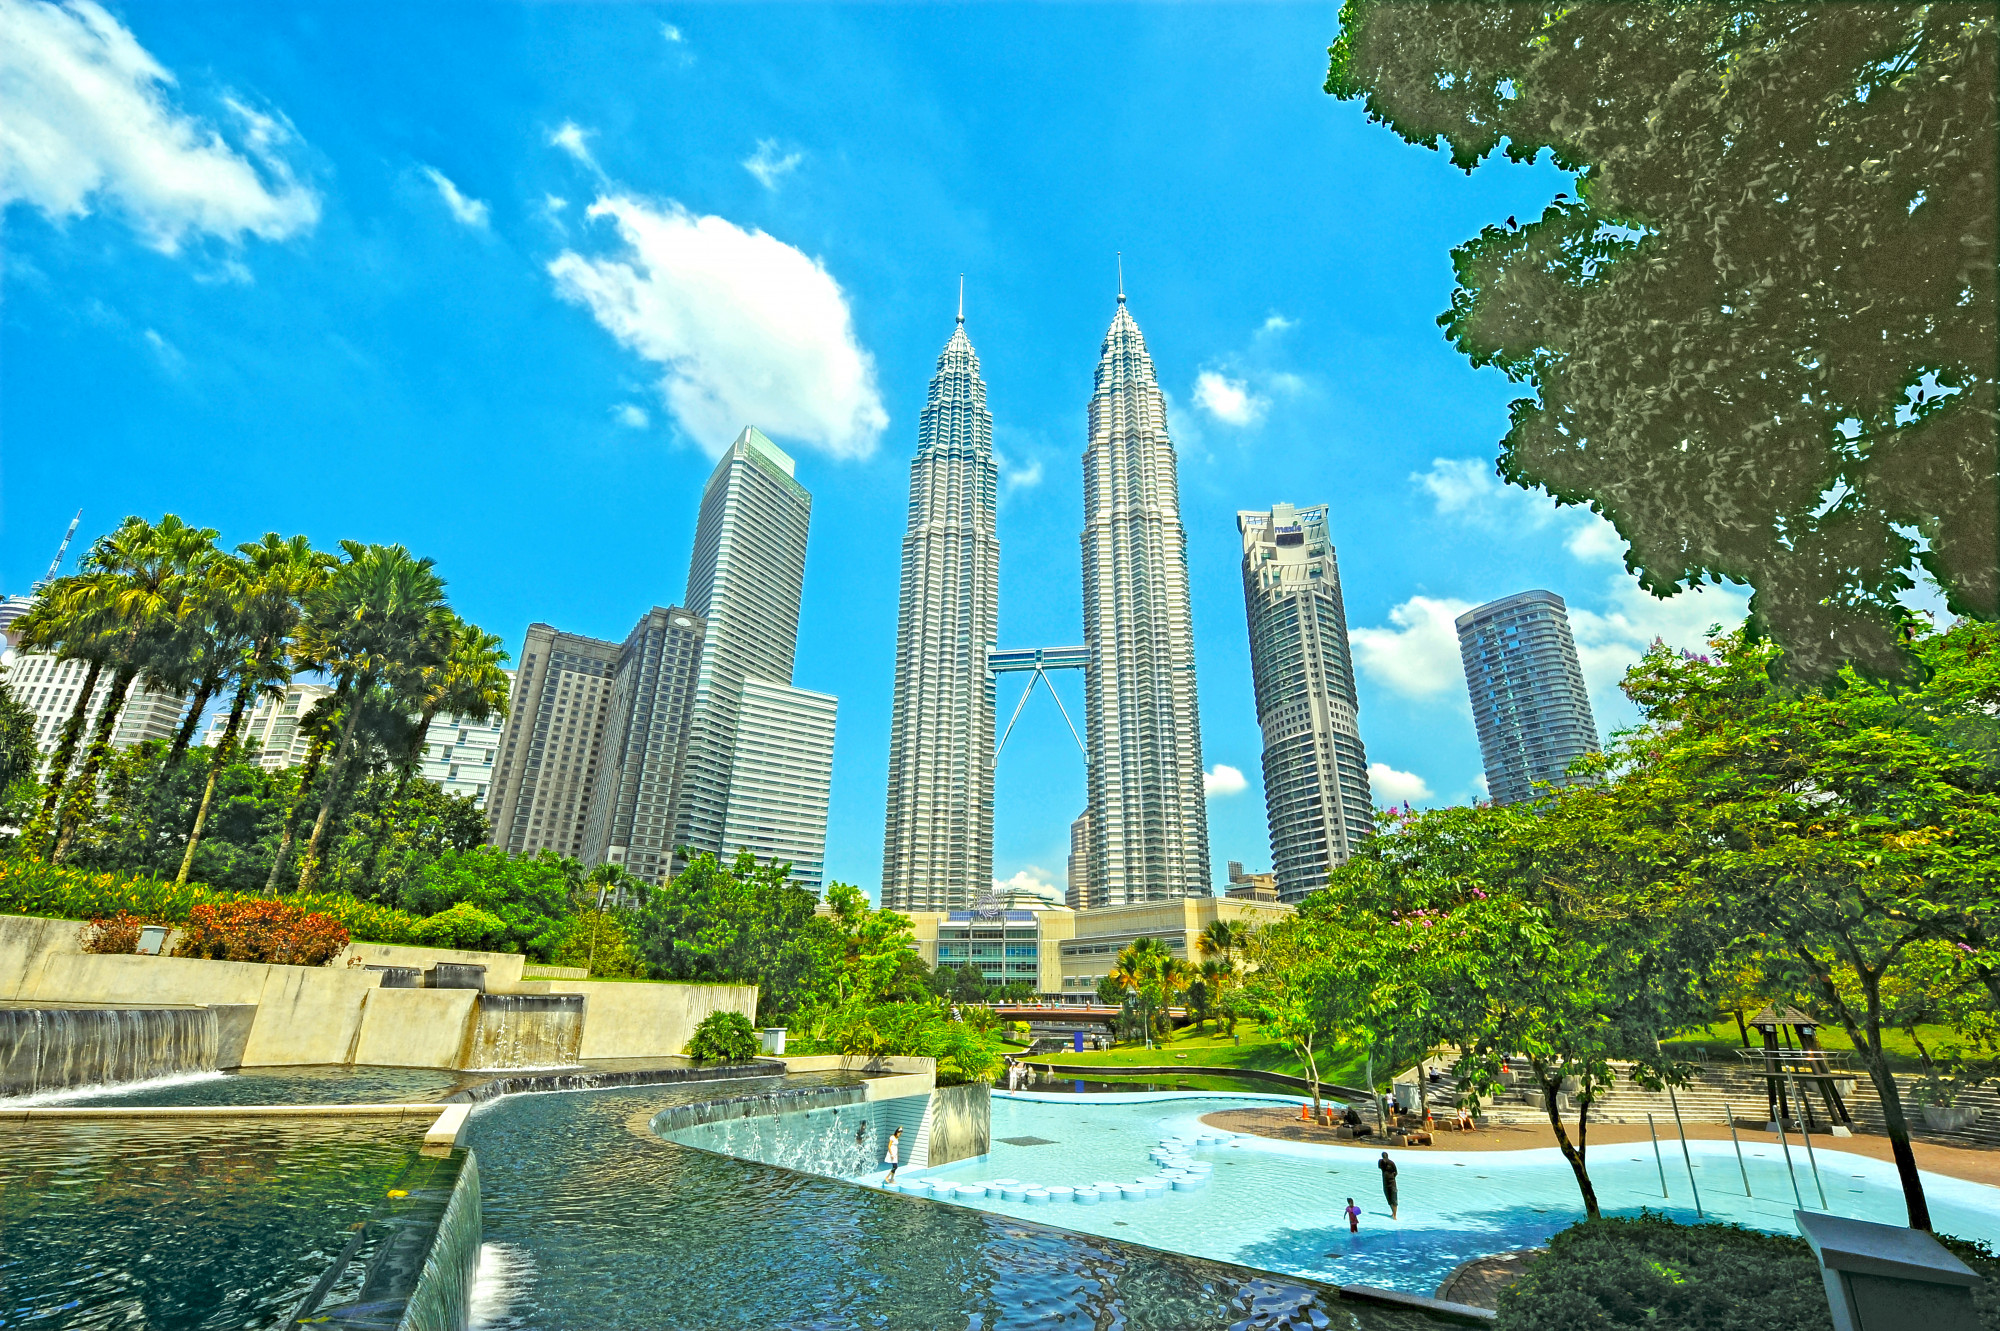 Tháp đôi Petronas – Wikipedia tiếng Việthttps://vi.wikipedia.org › wiki › Tháp_đôi_Petronas Tháp đôi Petronas, hay Petronas TwinTowers, là tên một cao ốc tại Kuala Lumpur, Malaysia. Tòa tháp đôi này đã từng là tòa nhà cao nhất thế giới